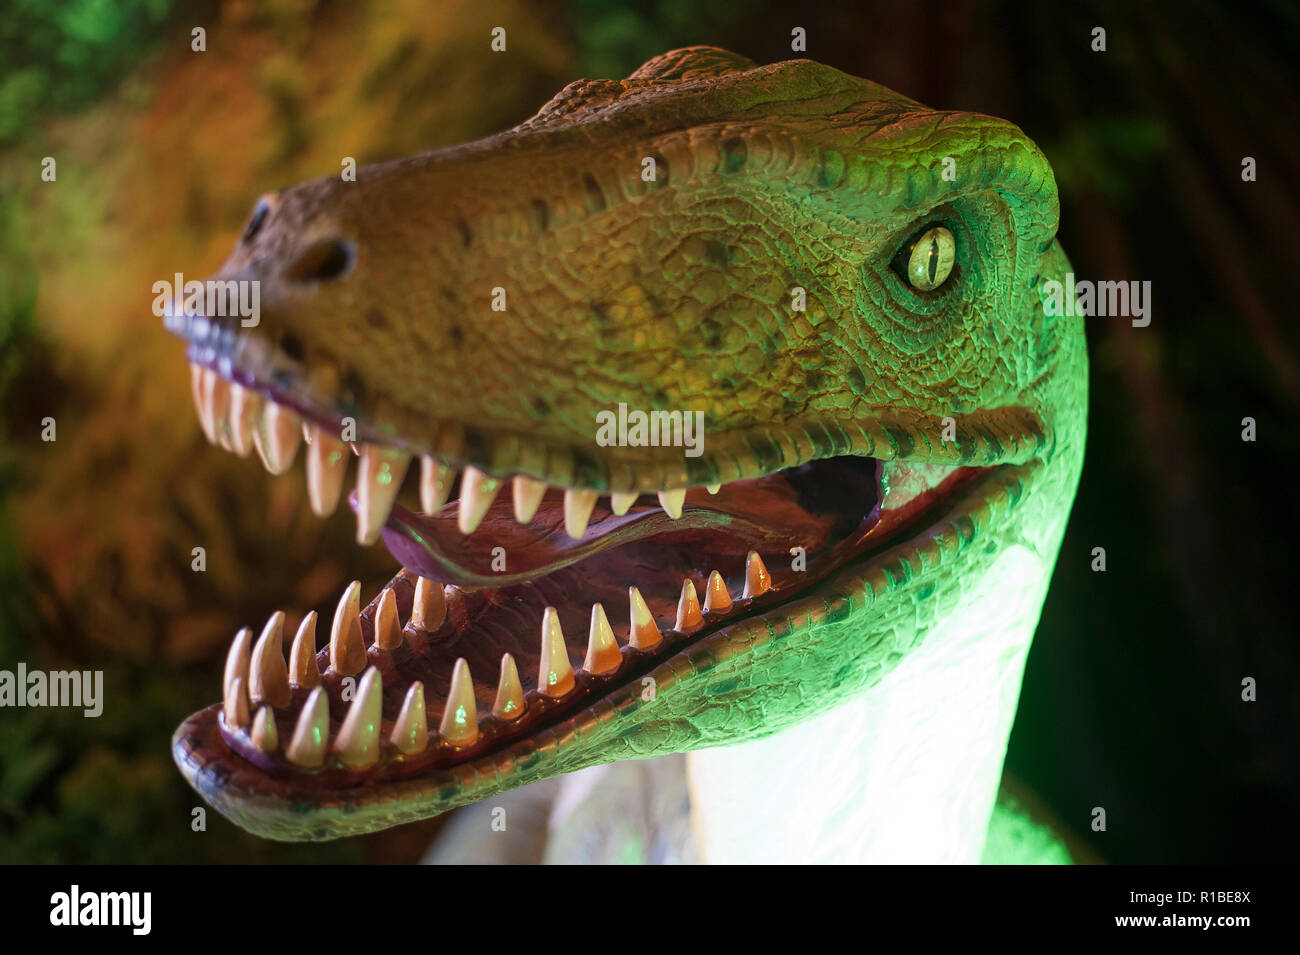 MY DINOSAURS Jurassic Dinosaur Park Dinosaur Teeth Model Replica